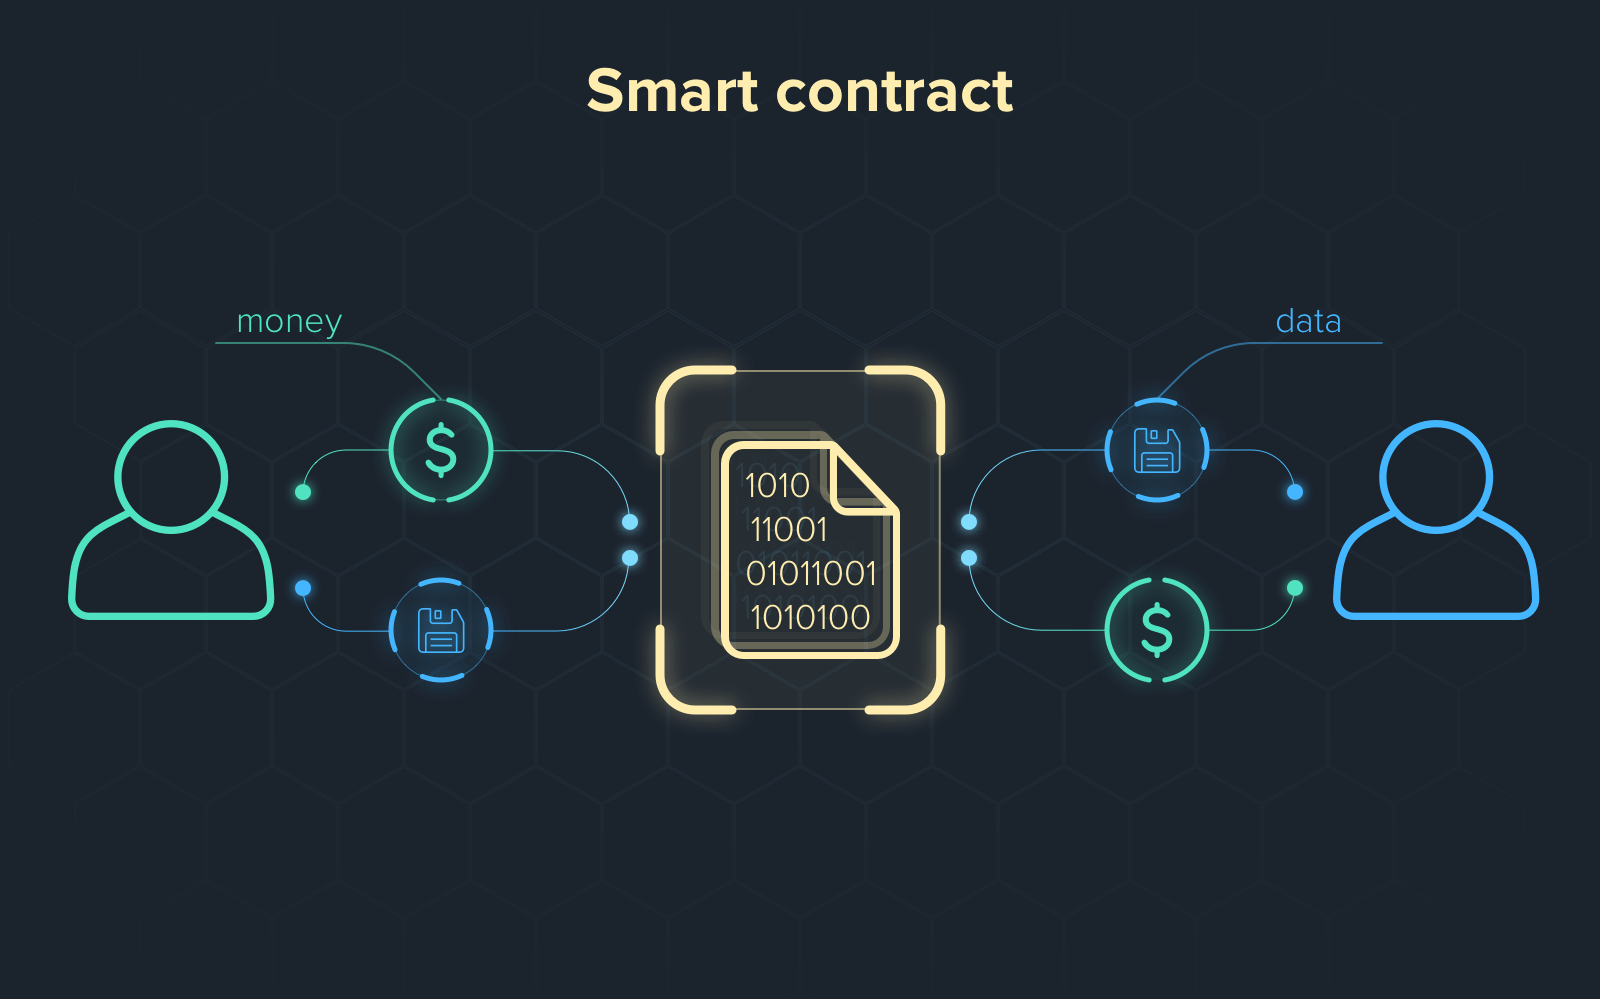 Hợp đồng thông minh – Smart Contract là gì?